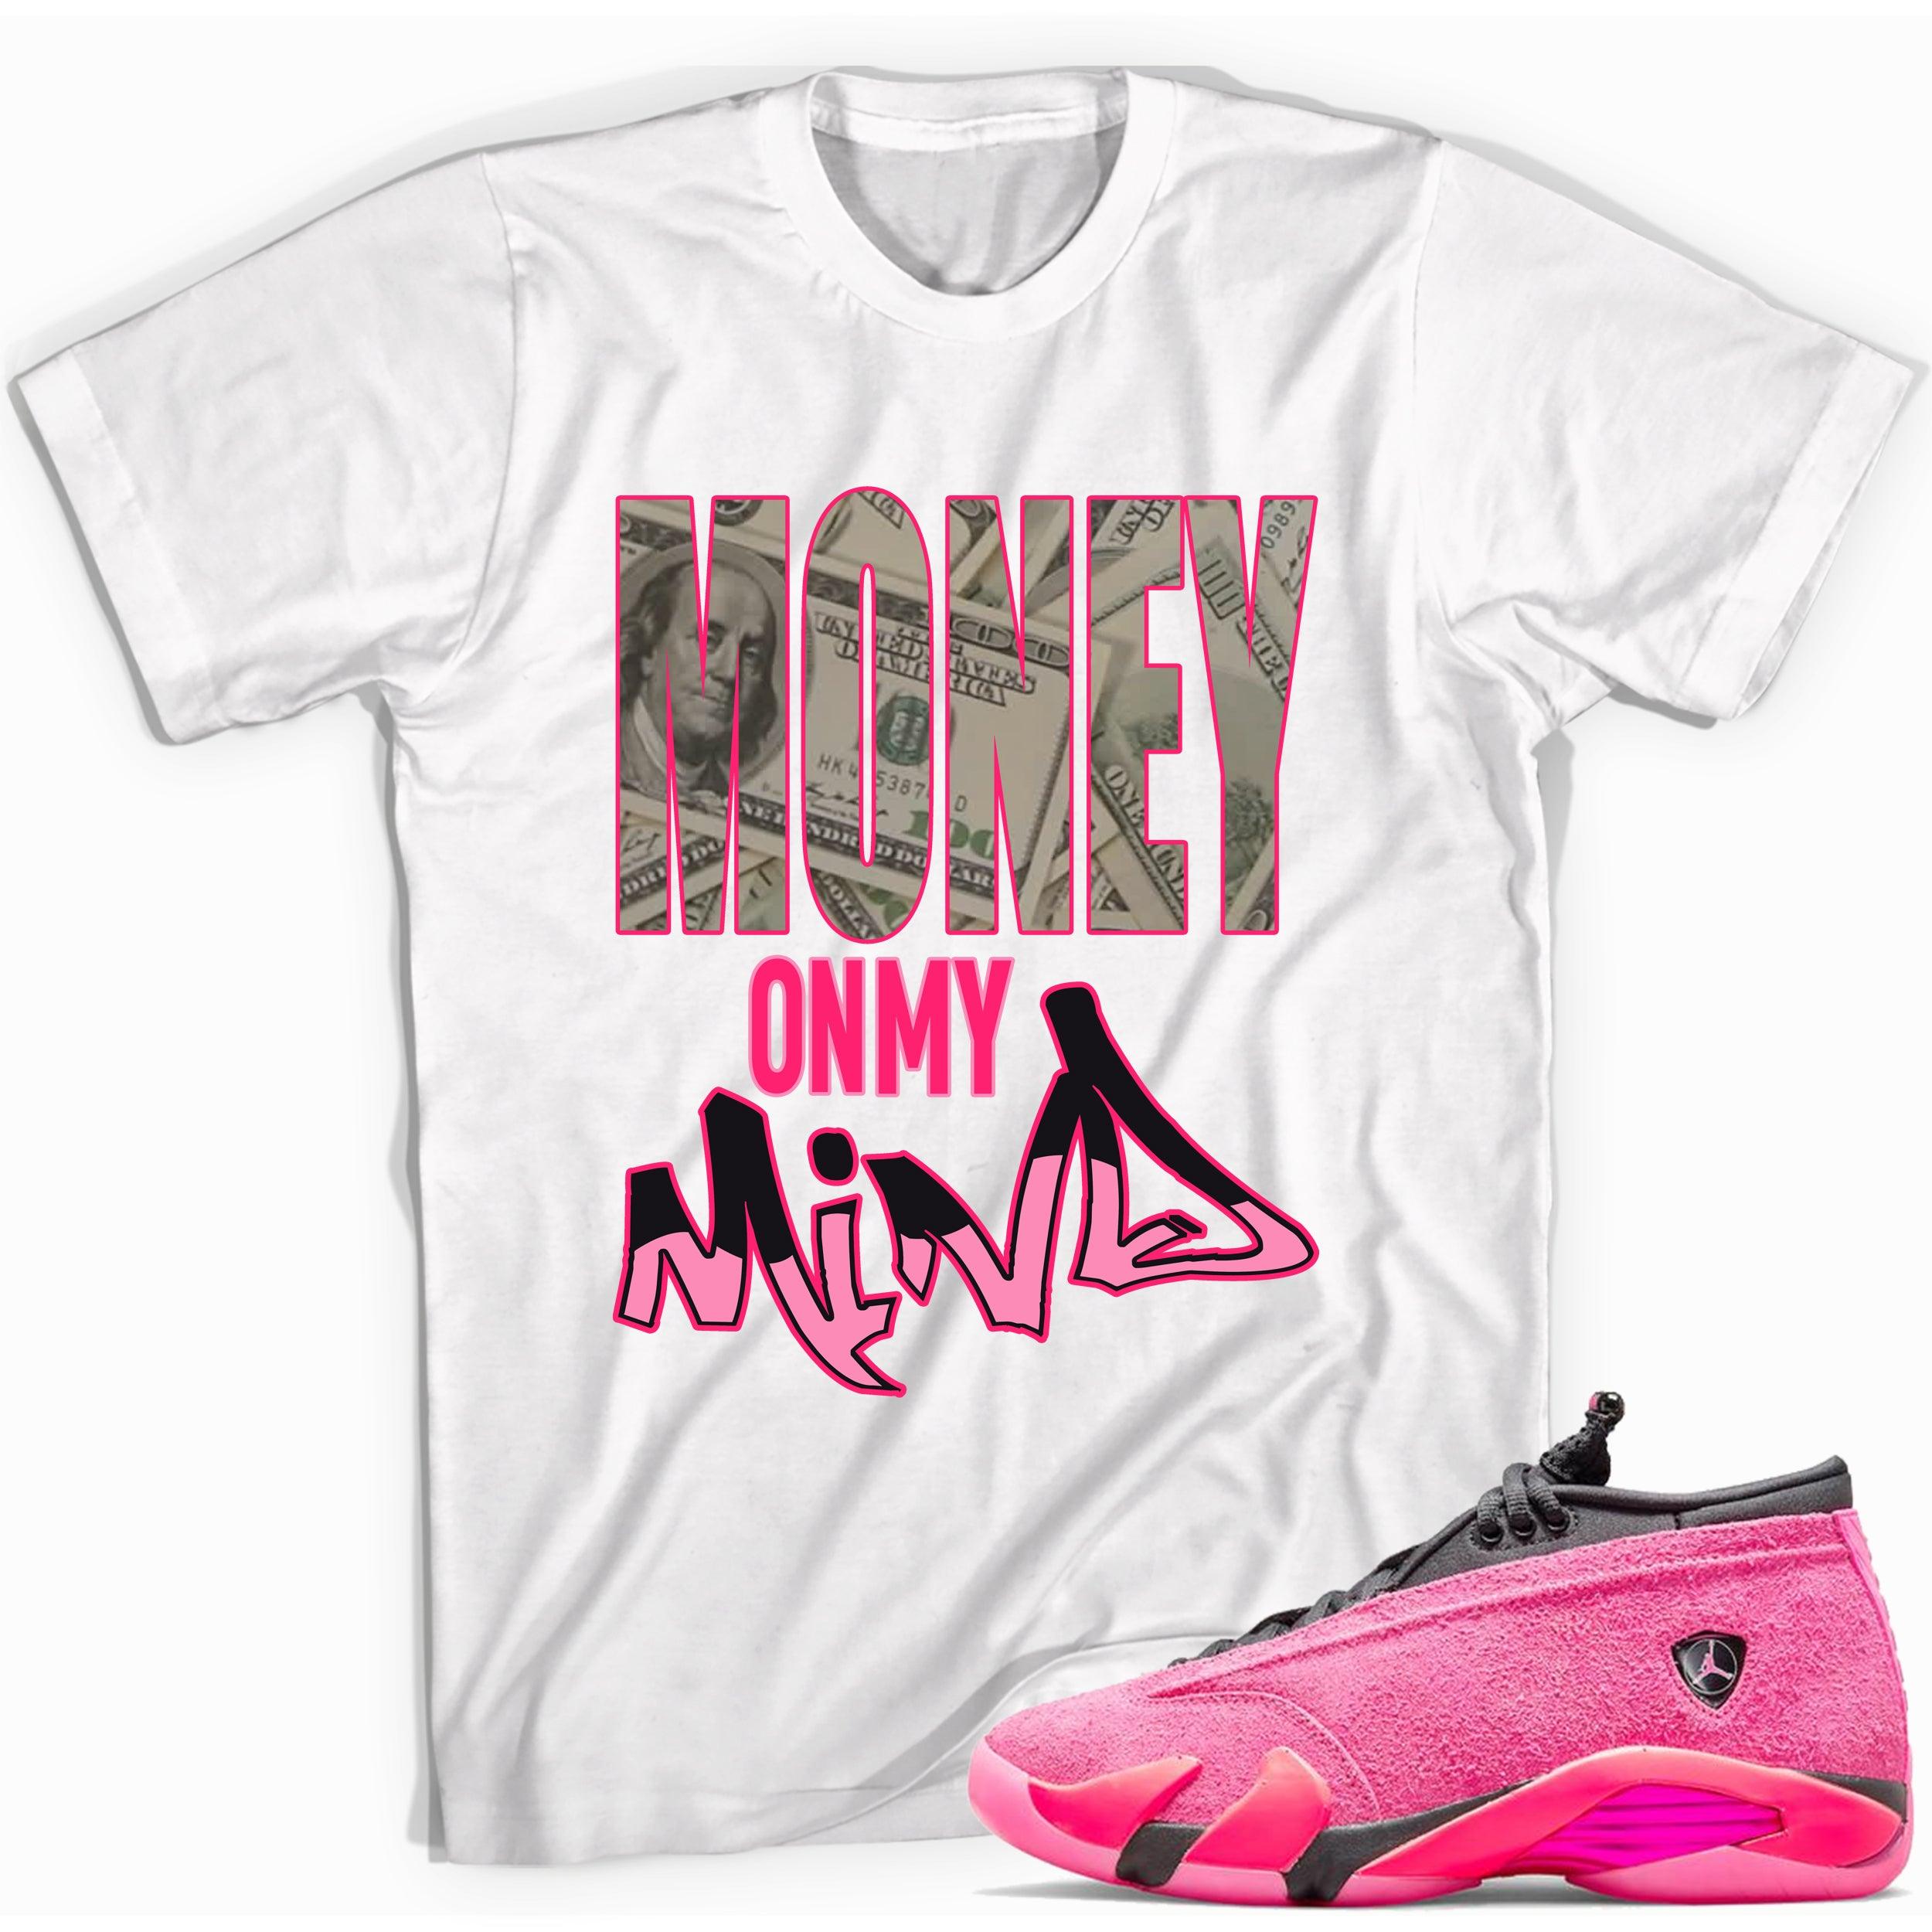  Money On My Mind Shirt Jordan 14s Low Shocking Pink photo